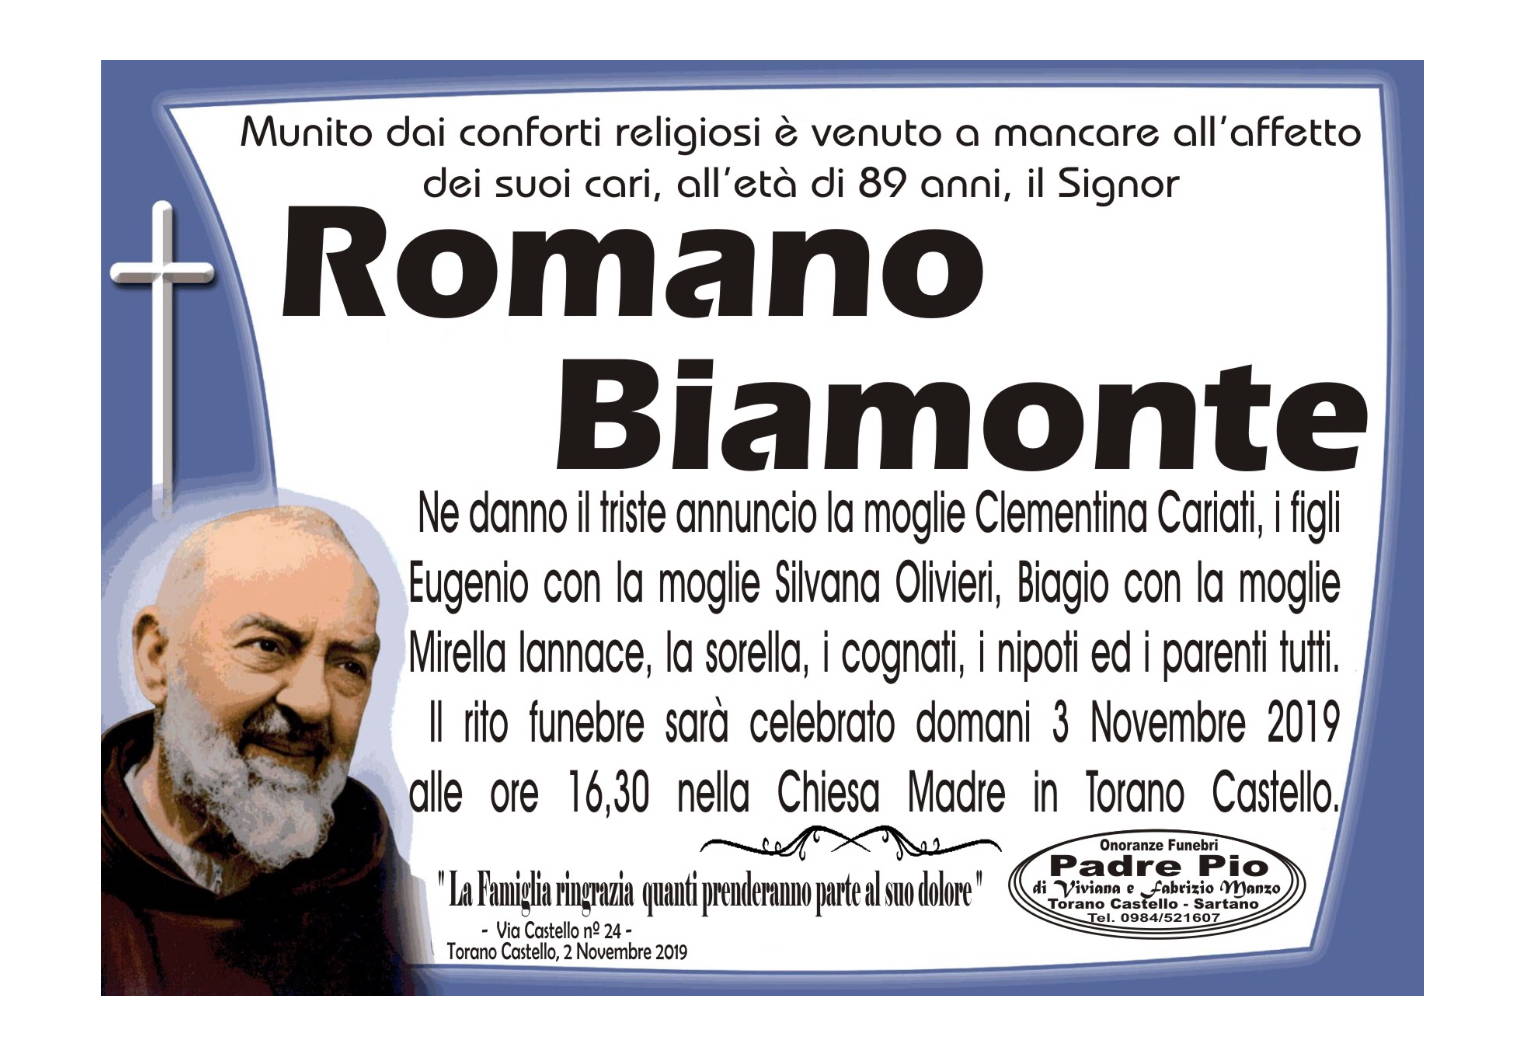 Romano Biamonte